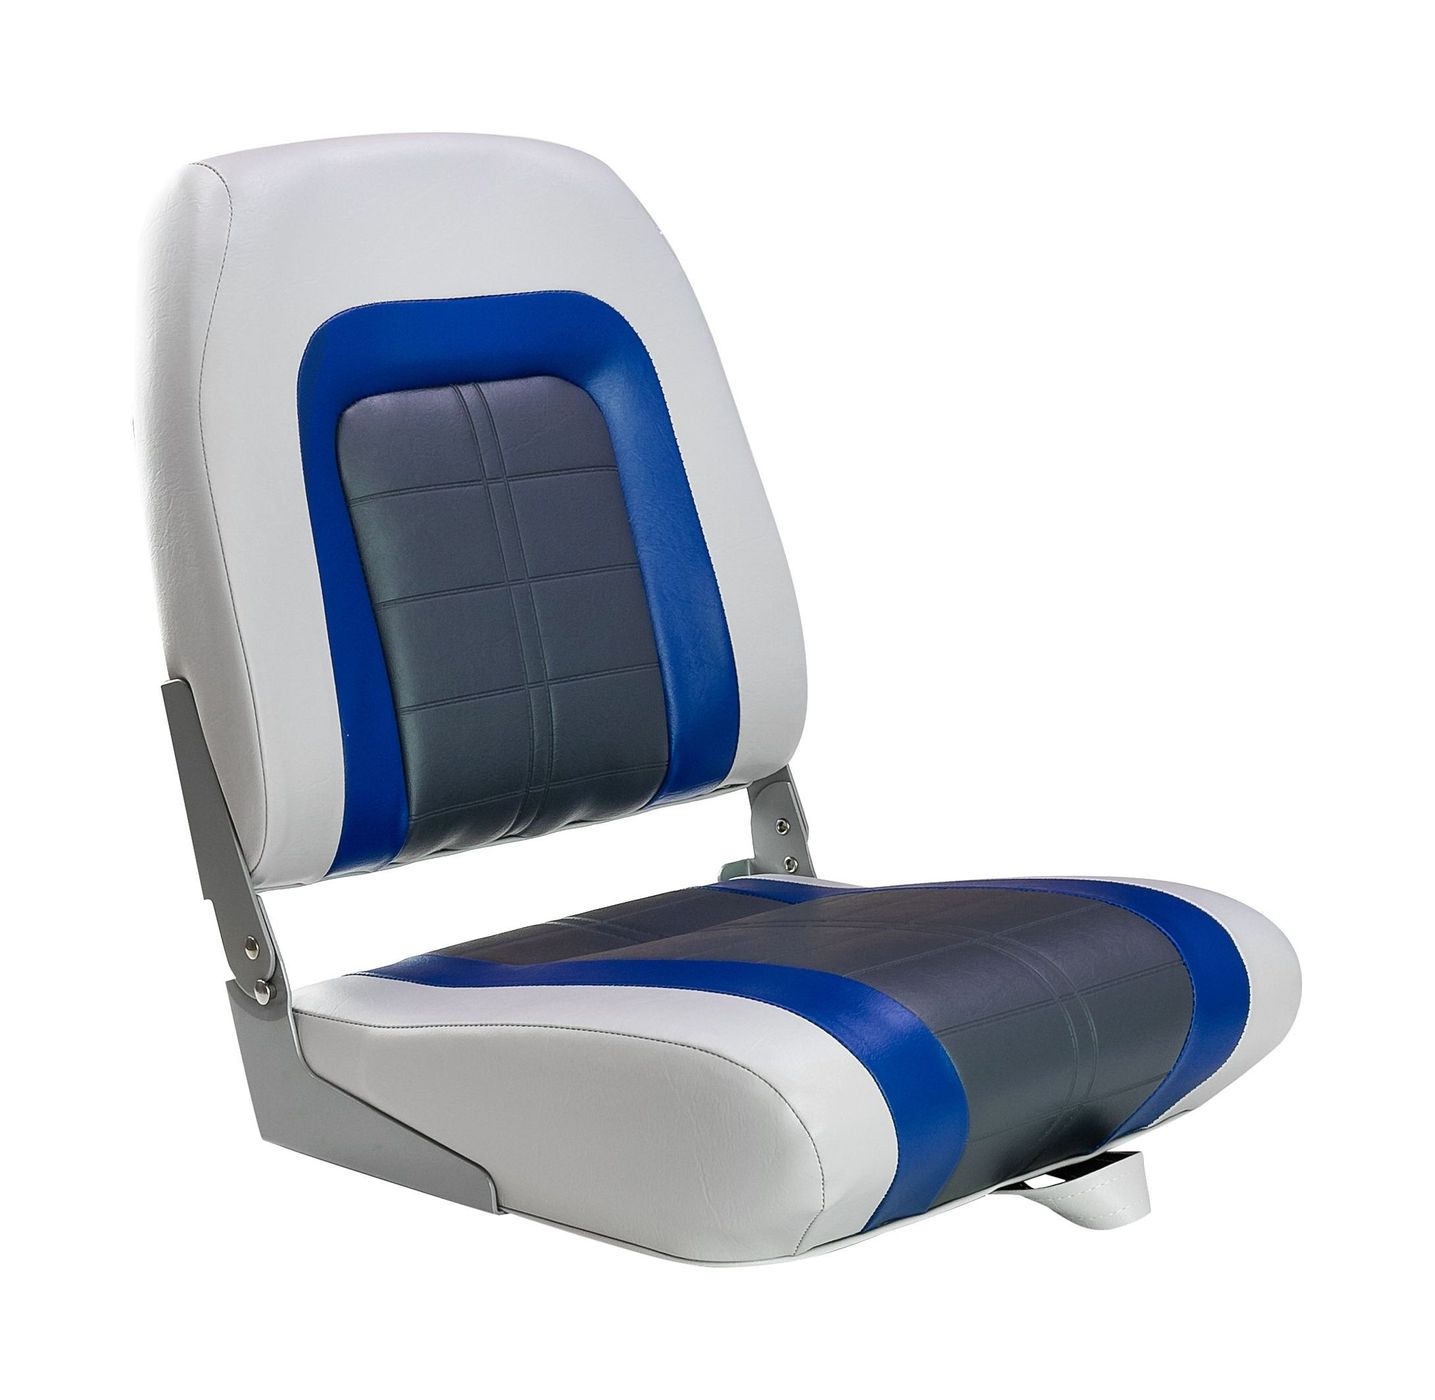 Кресло мягкое складное Special, обивка винил, цвет серый/синий/угольный, Marine Rocket 76236GBC-MR - фото 1